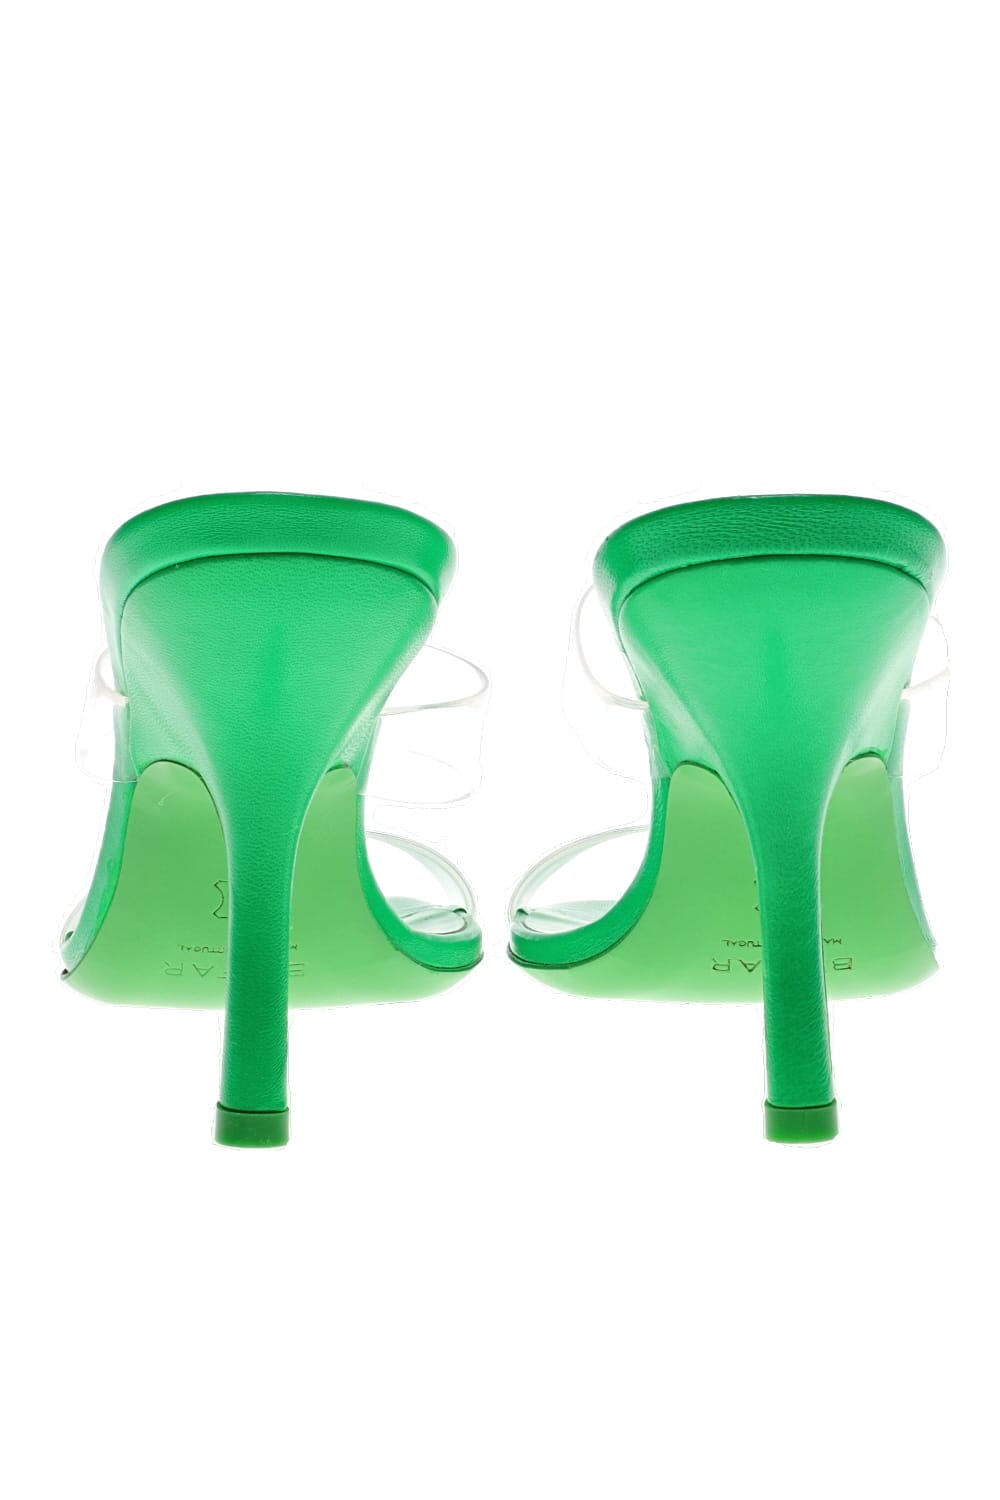 BY FAR Clara Super Green PVC Leather Heels